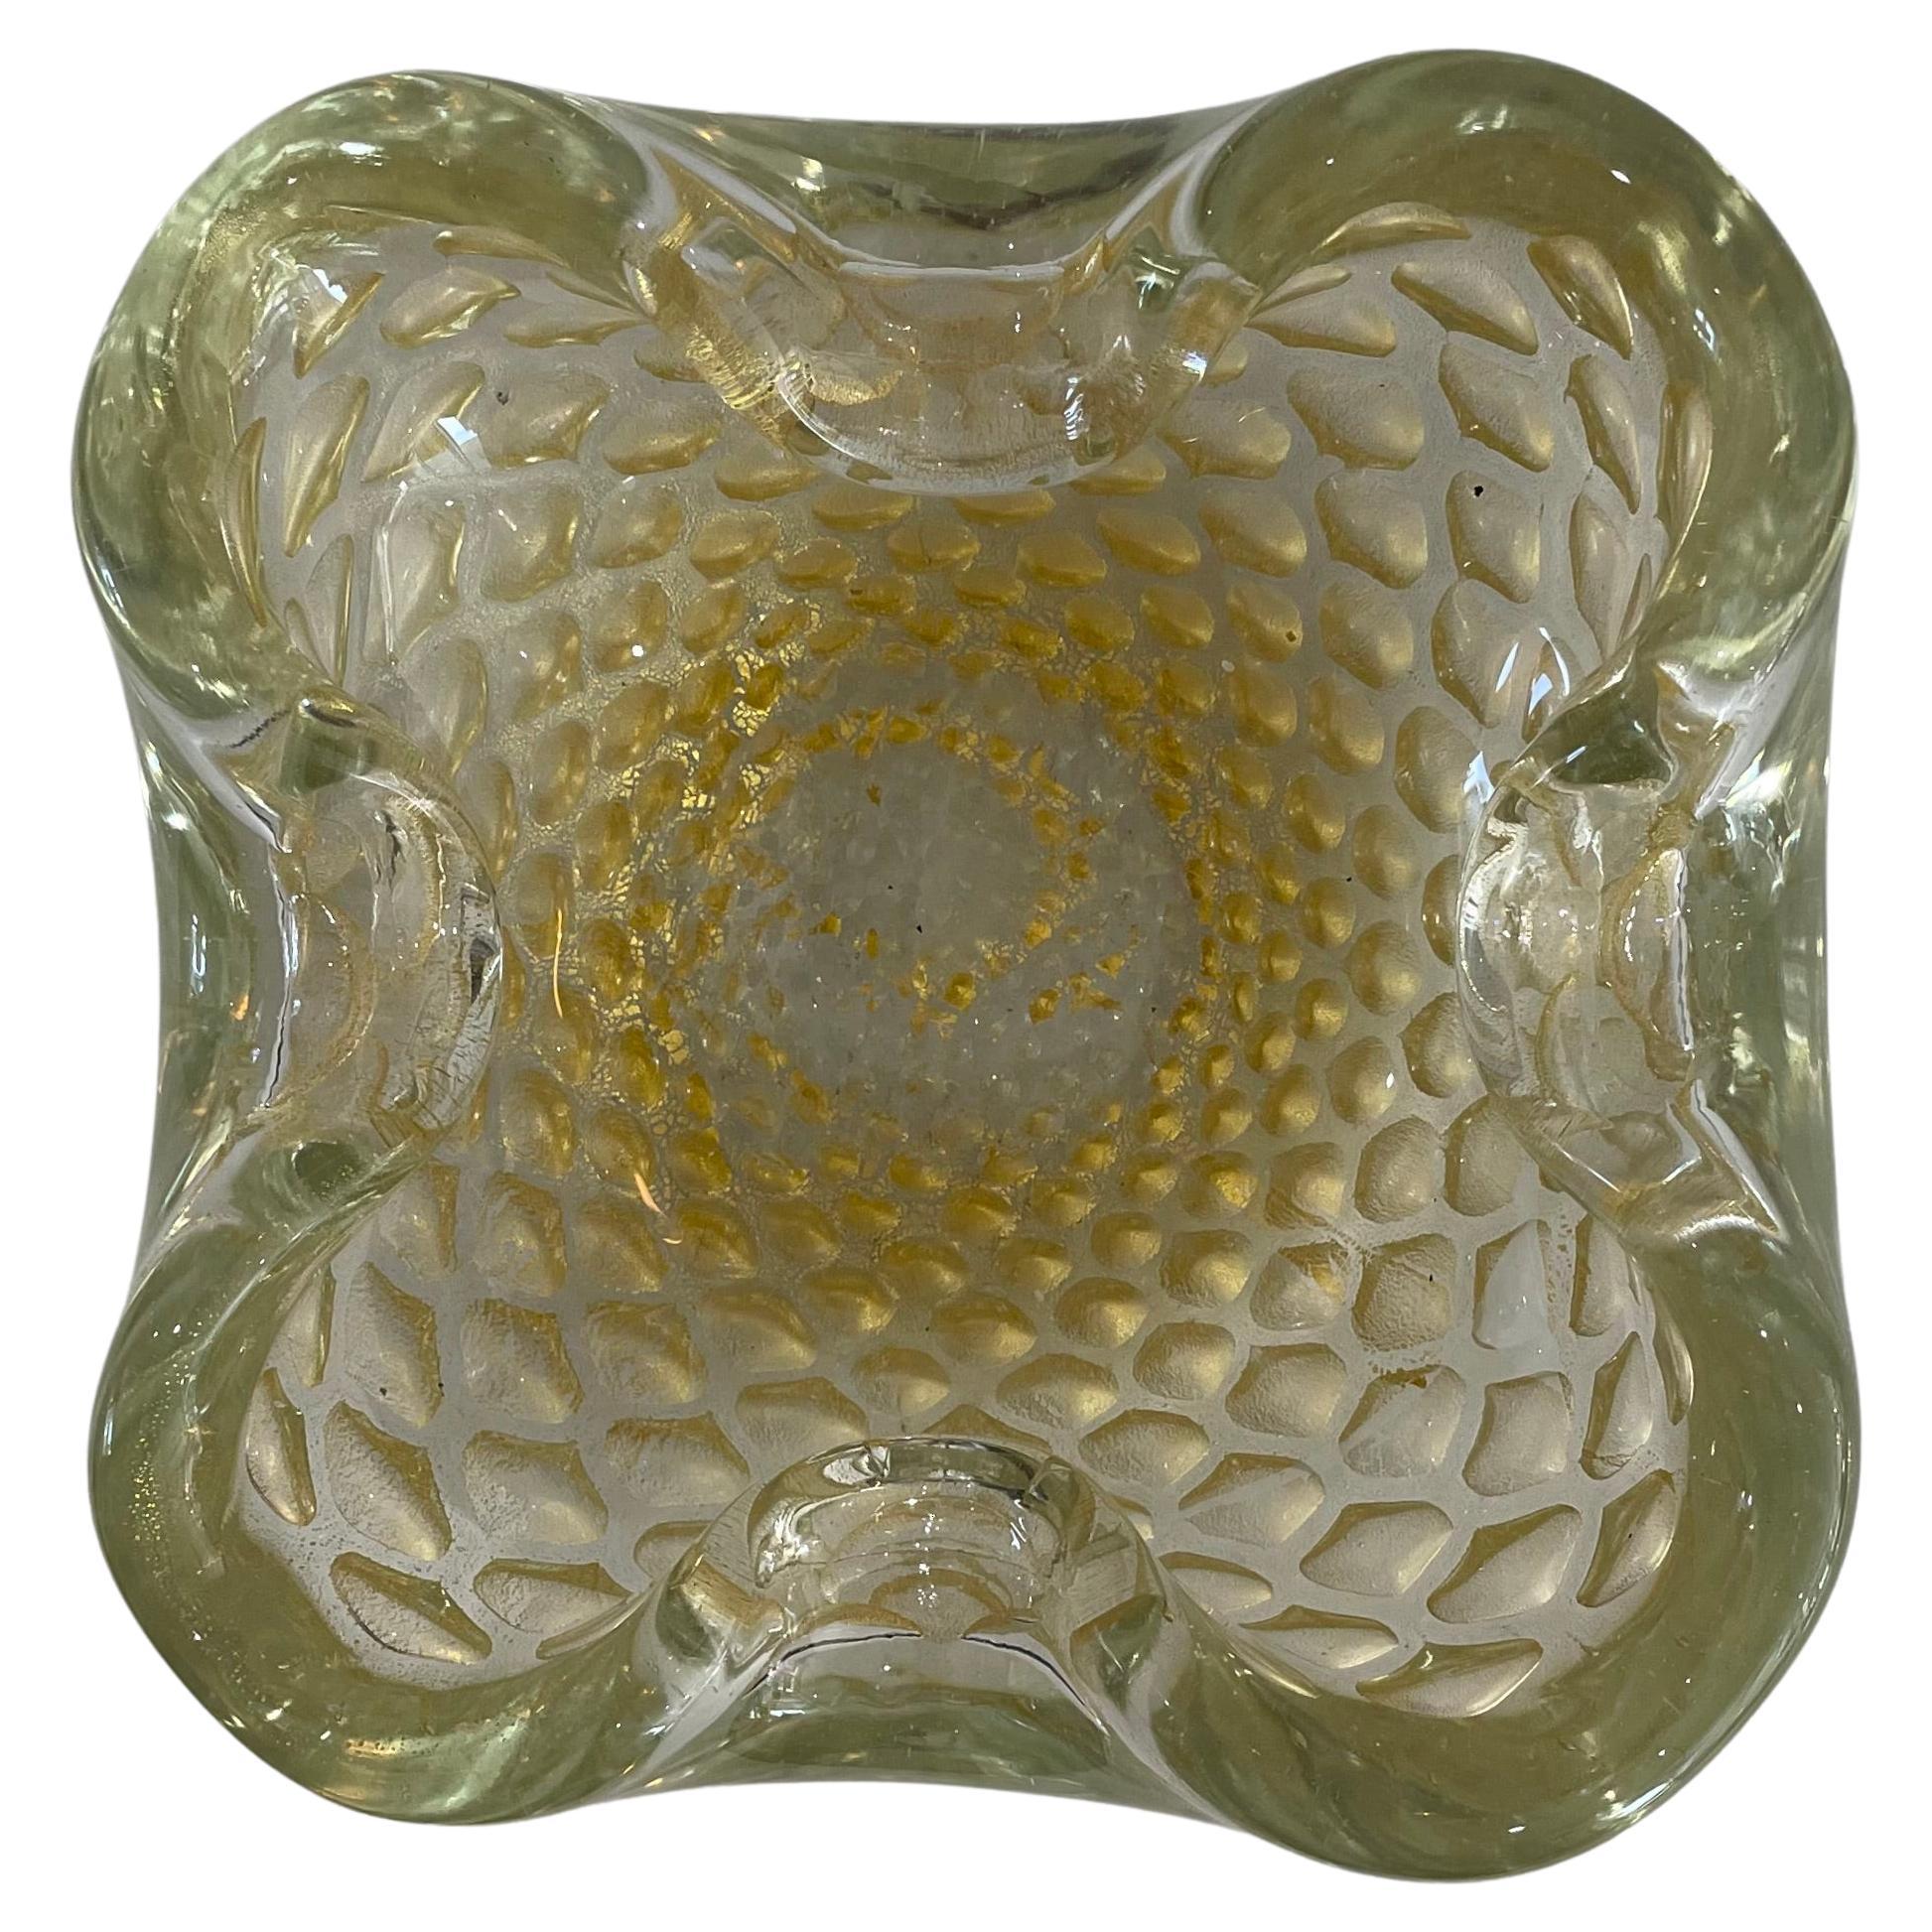 Cette pièce de verre de Murano, élégante, chic et tellement verstaile, peut être utilisée pour contenir une bougie votive, un potpurri, des bonbons, des tranches de citron, etc. 

Note : La pièce date des années 1960-1970.